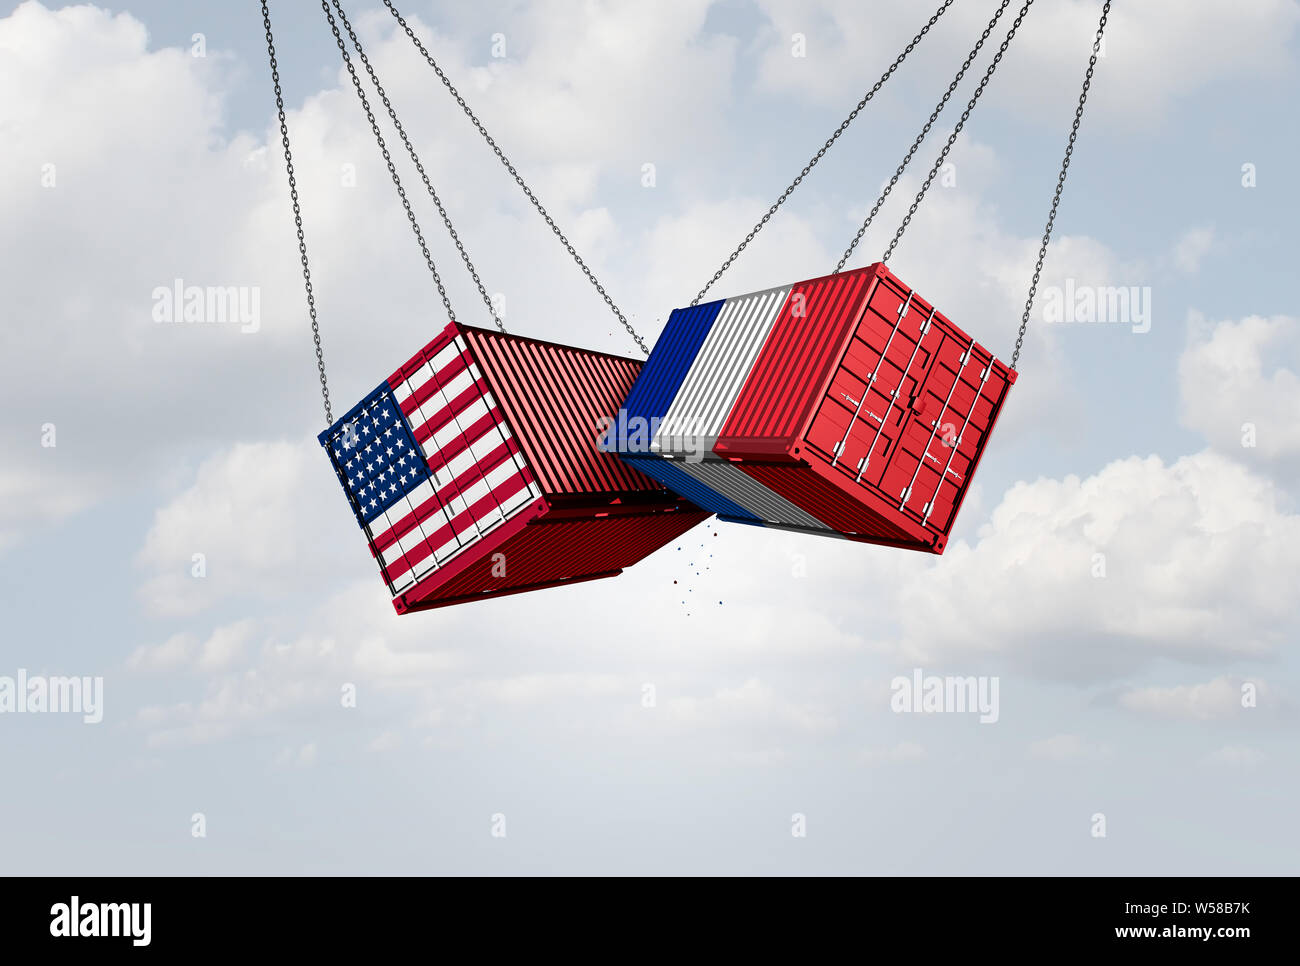 Frankreich USA Handelskrieg und amerikanischen Zölle global trade Streit als zwei entgegengesetzte Ladung Containern in französischer Sprache steuern wirtschaftlichen Konflikt über Import. Stockfoto